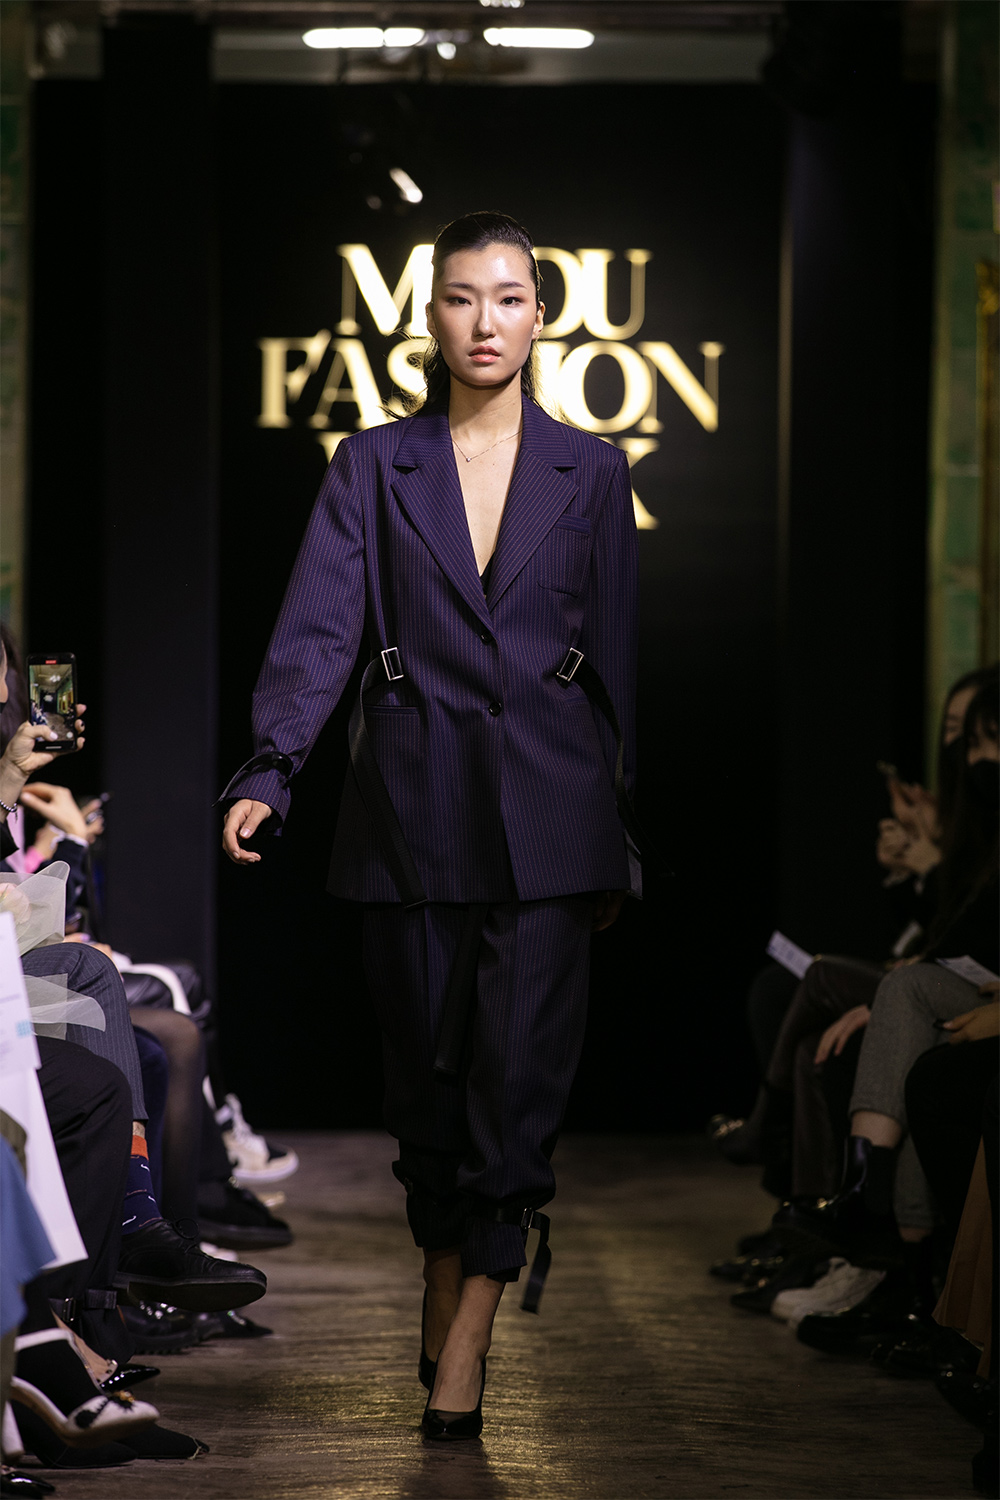 MPDU Fashion Week: Хувирах чадвартай, ухаалаг хувцаснууд LINE брэндийн цуглуулгад (фото 9)